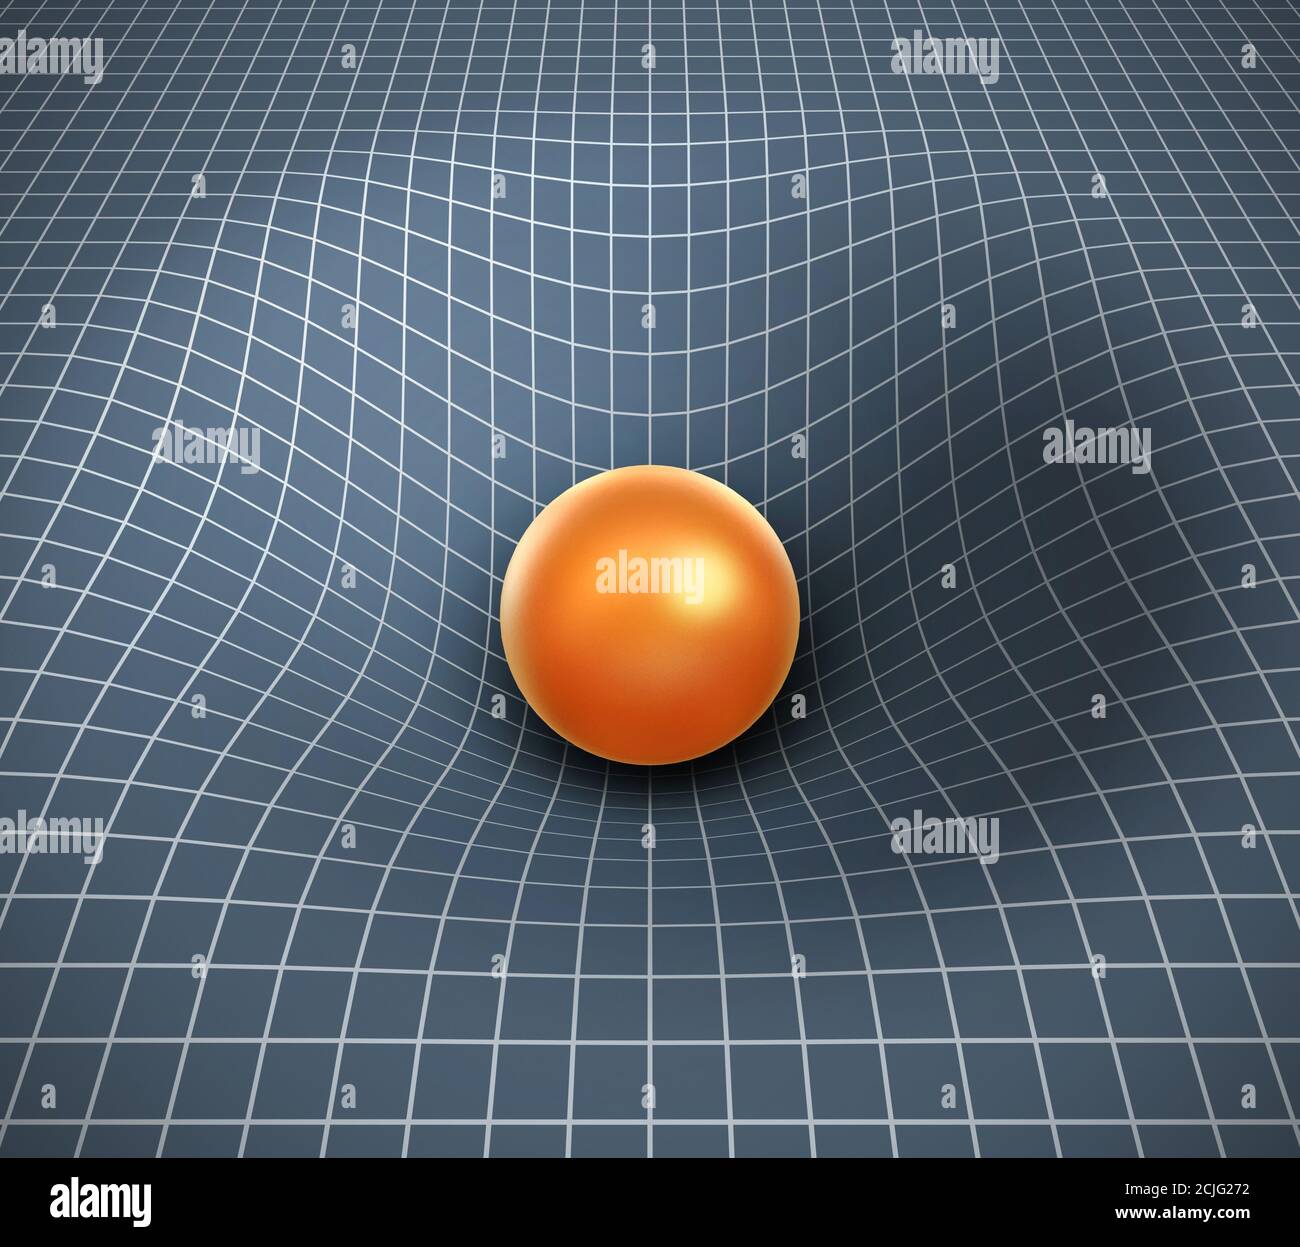 illustration gravity 3d - objet affectant l'espace / le temps Banque D'Images